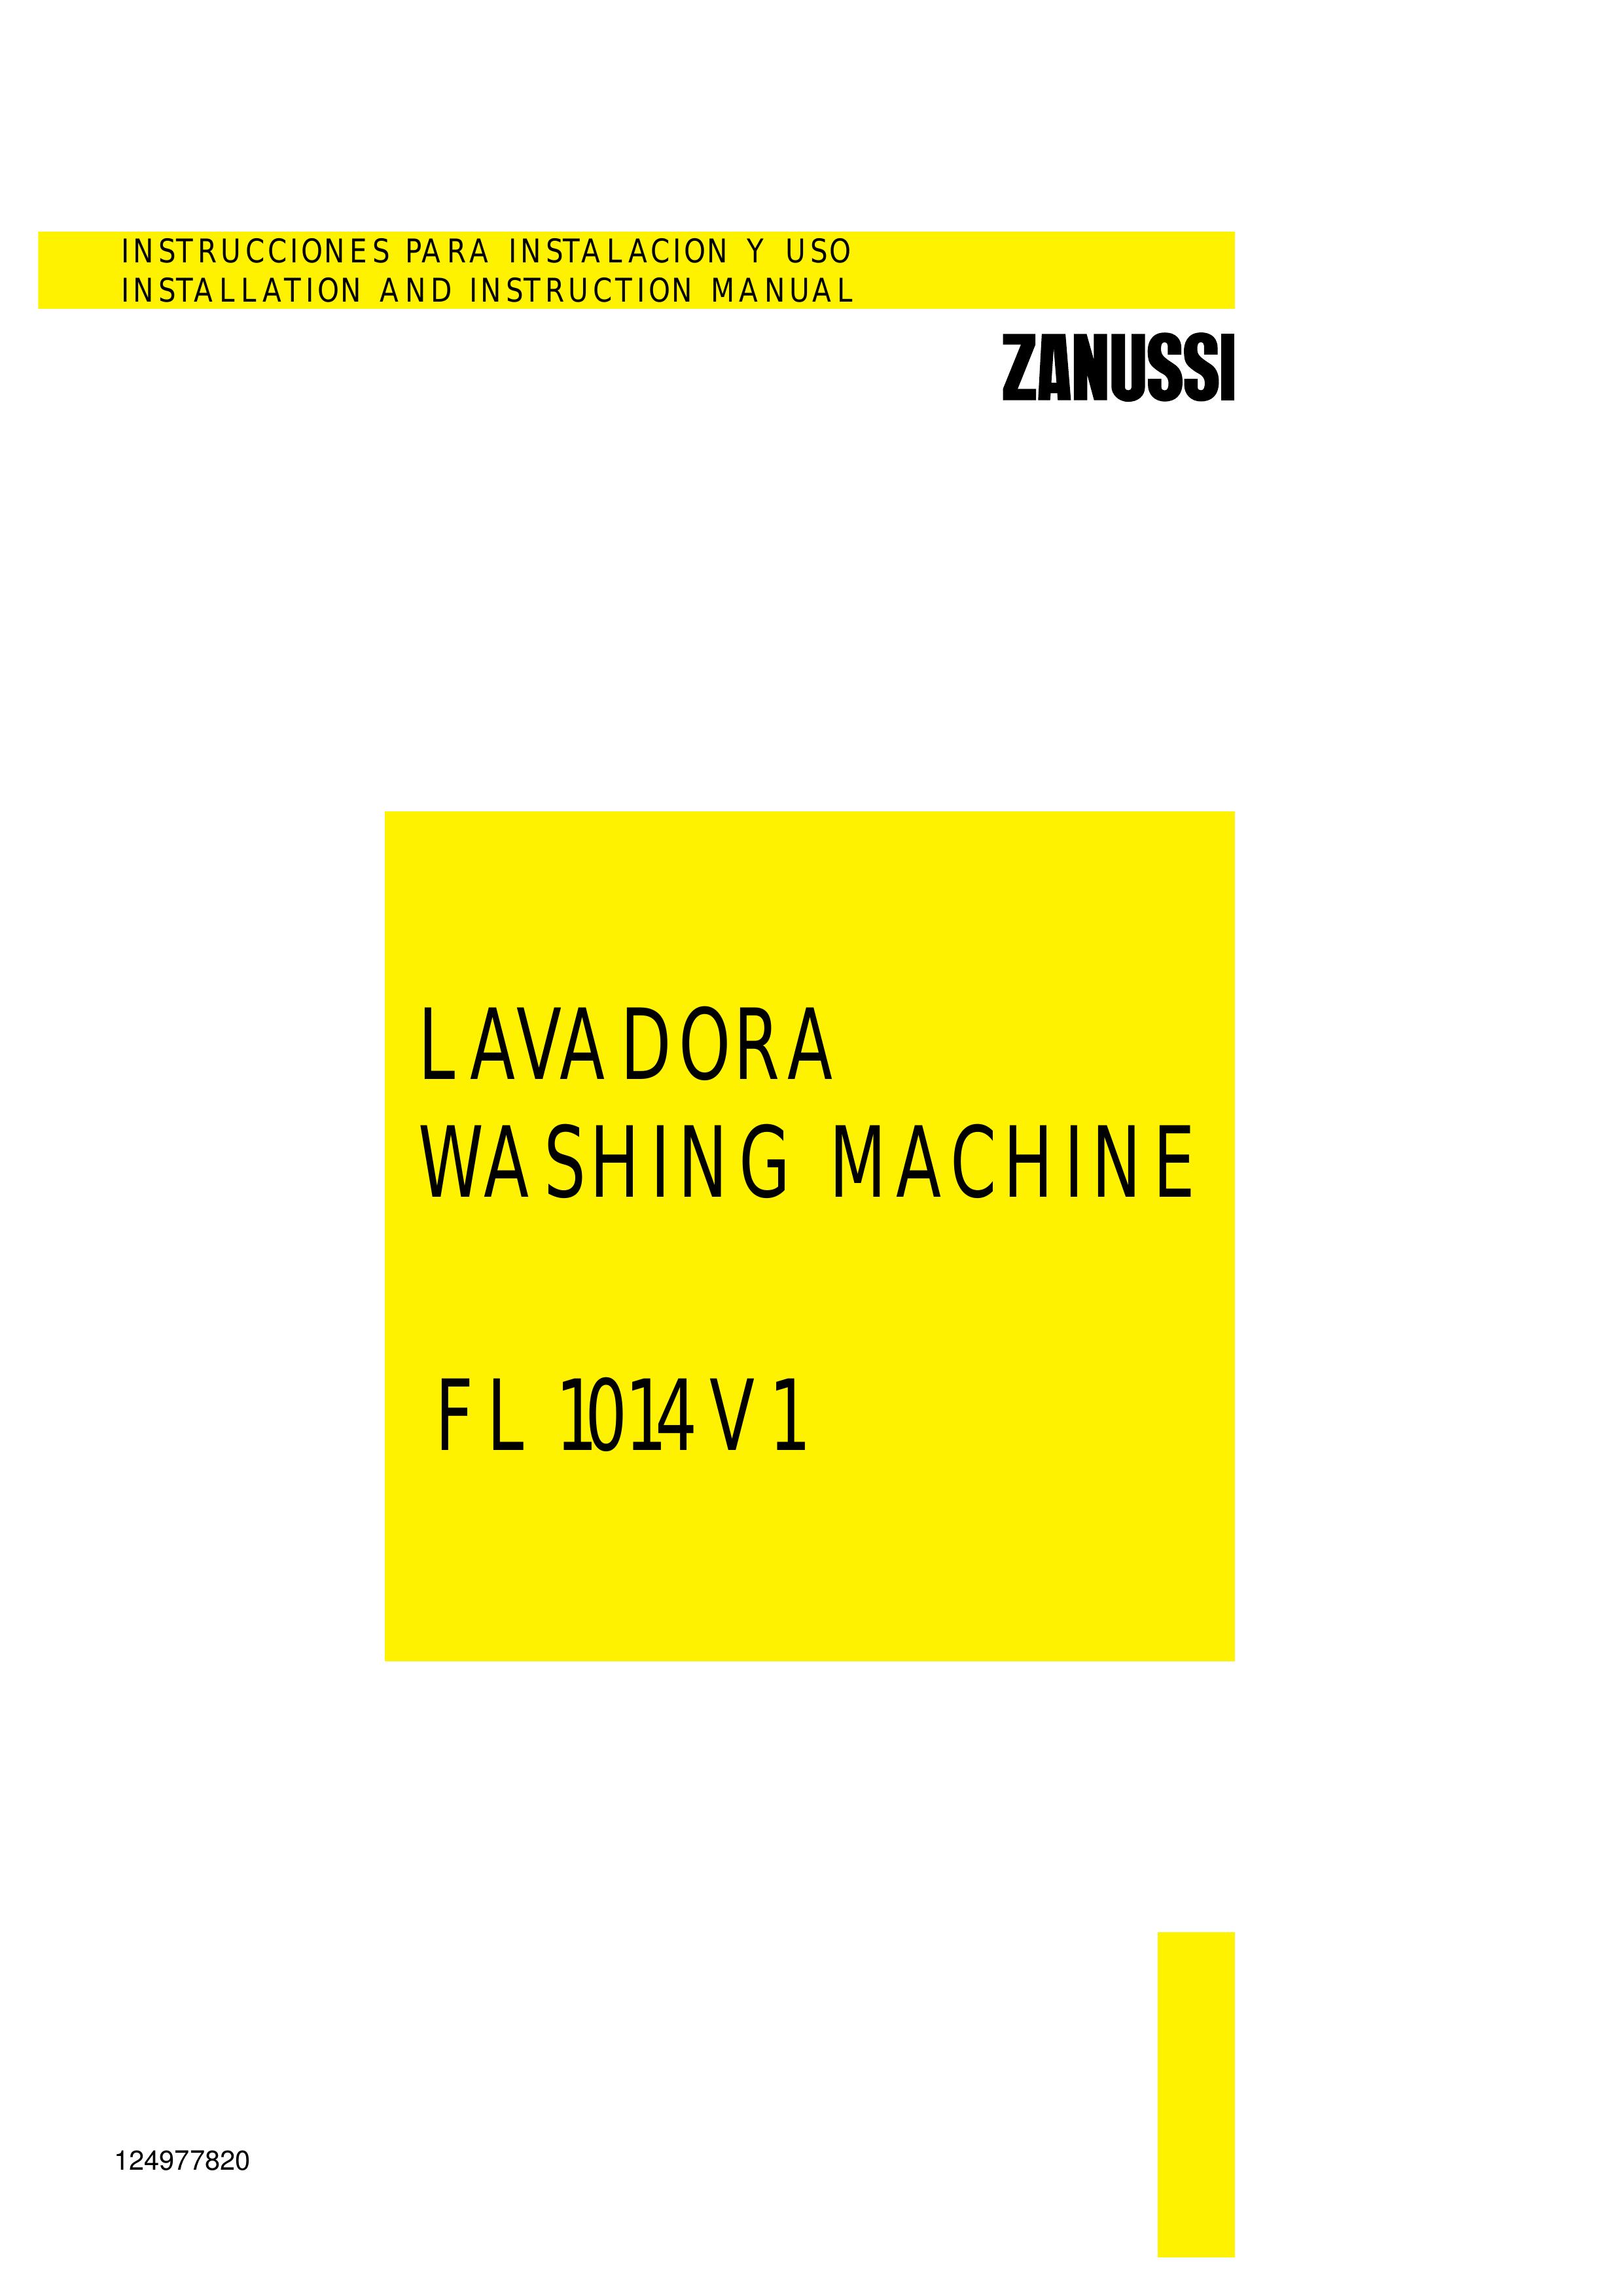 Zanussi FL 1014 V1 Washer User Manual